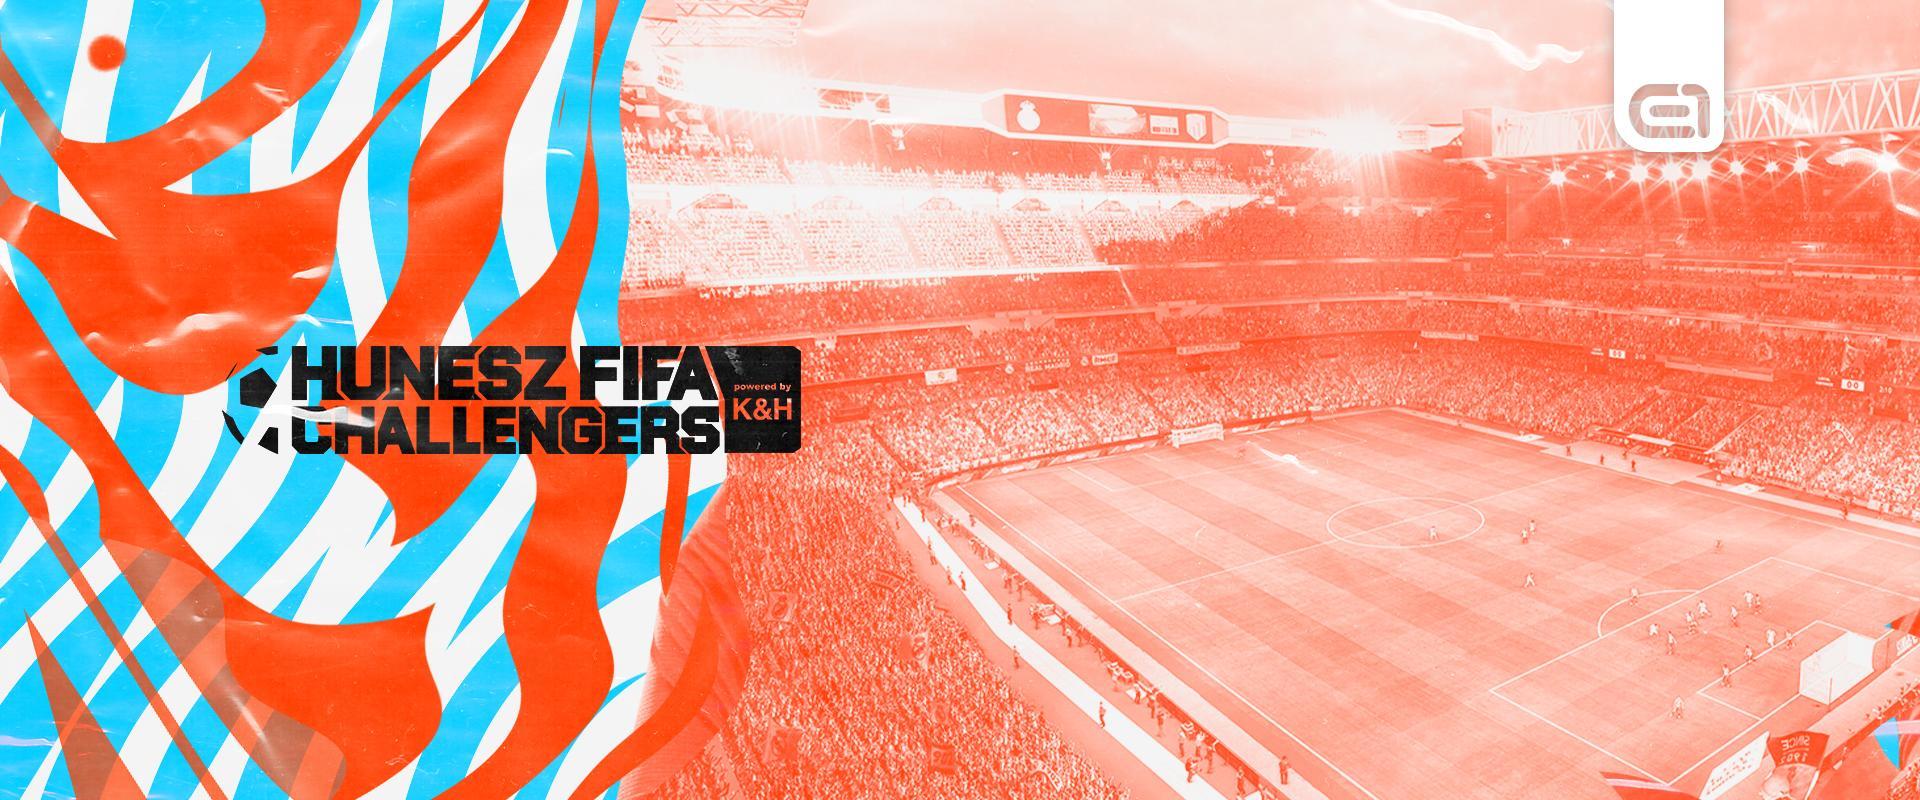 Itt a június, jönnek HUNESZ FIFA Challengers selejtezők!